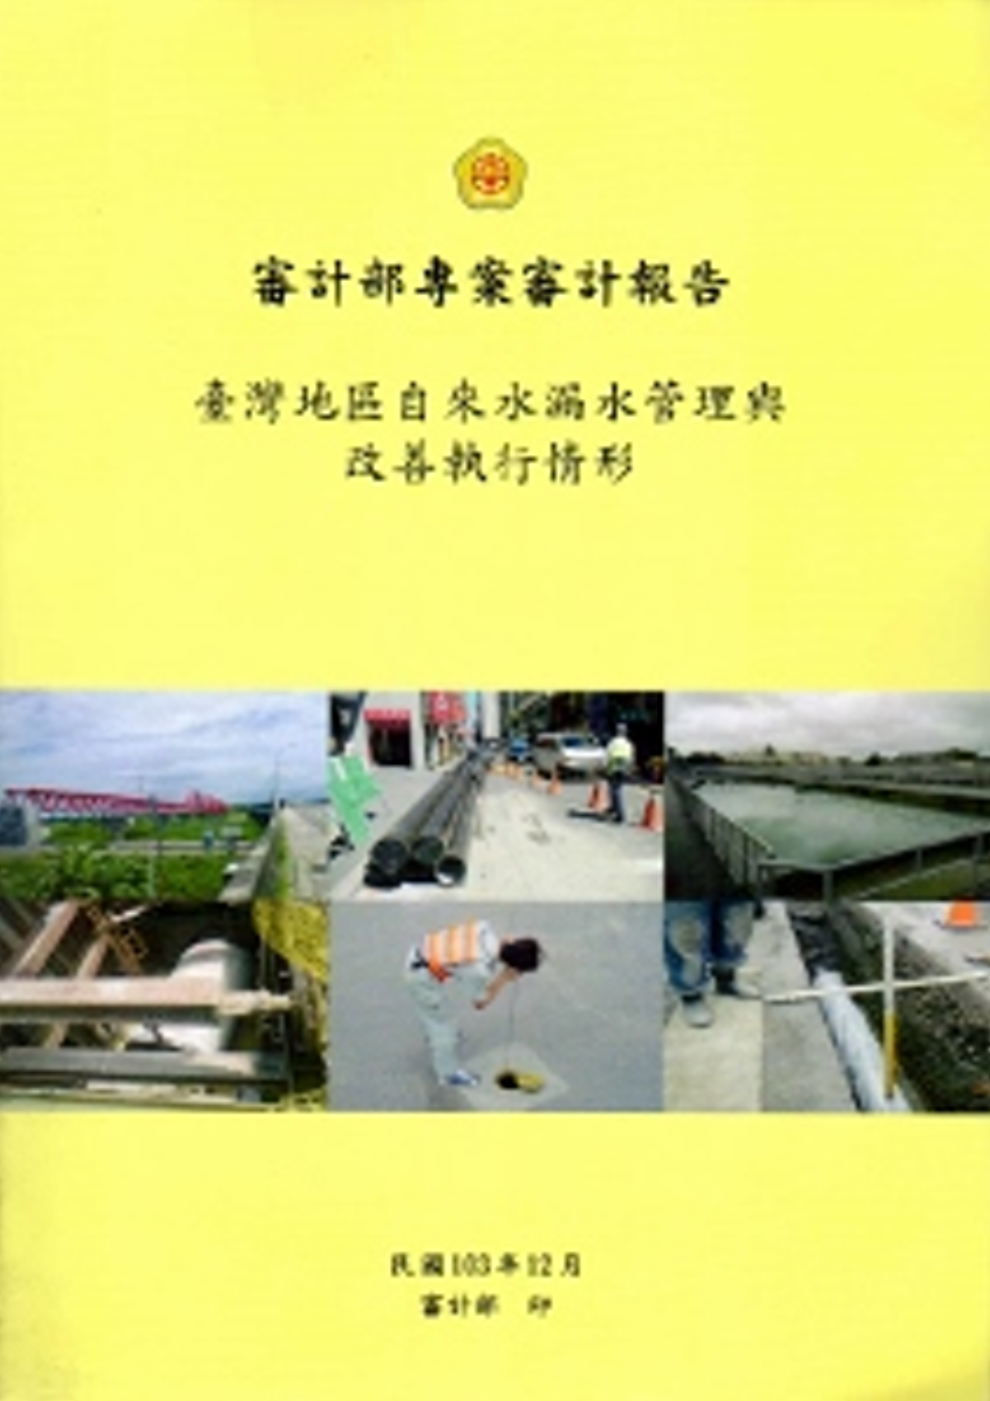 臺灣地區自來水漏水管理與改善執行情形